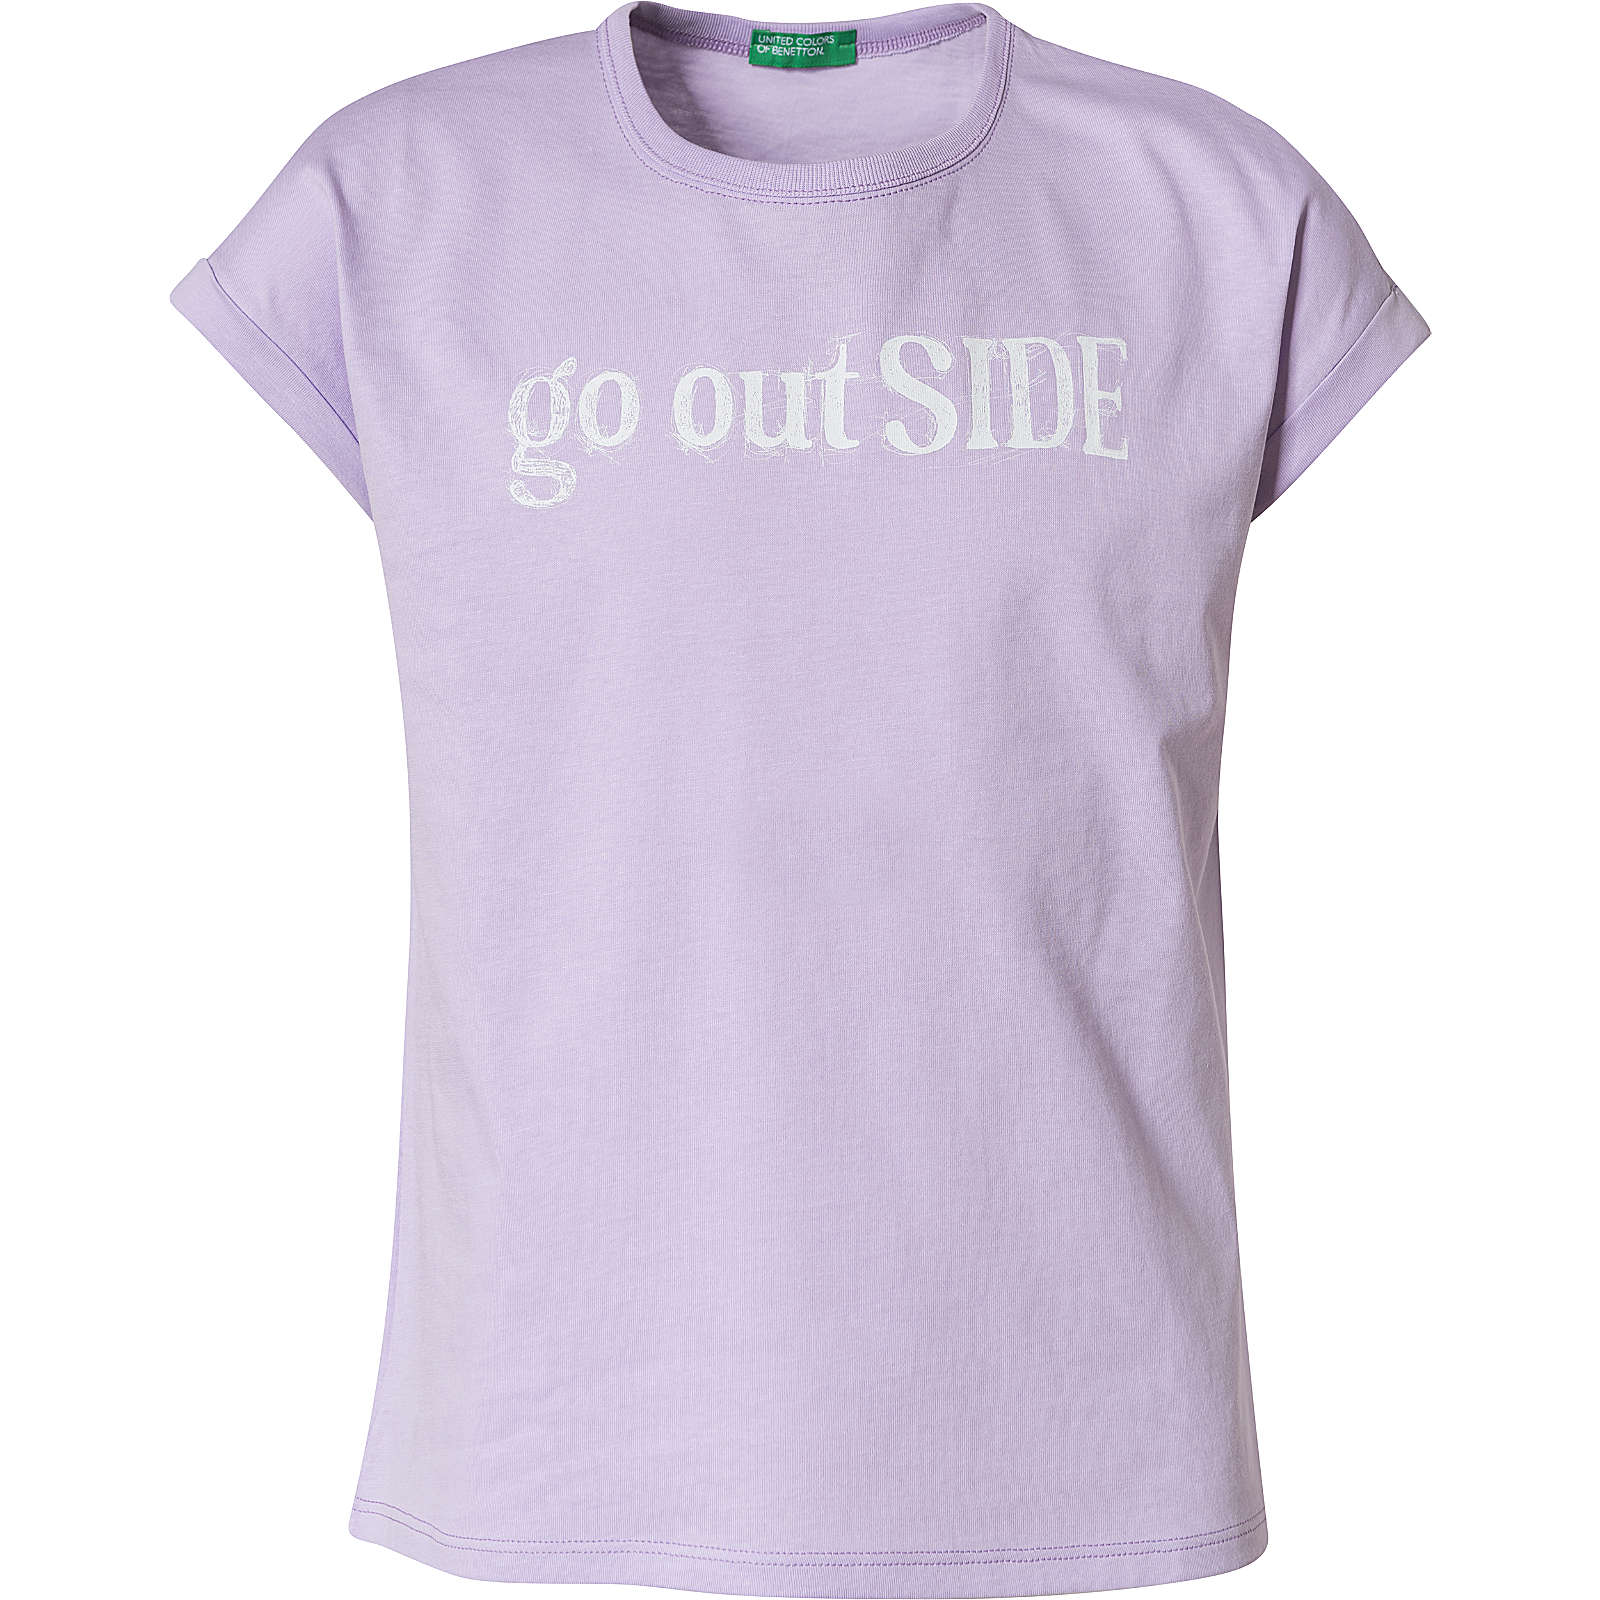 United Colors of Benetton T-Shirt für Mädchen violett Mädchen Gr. 128/134